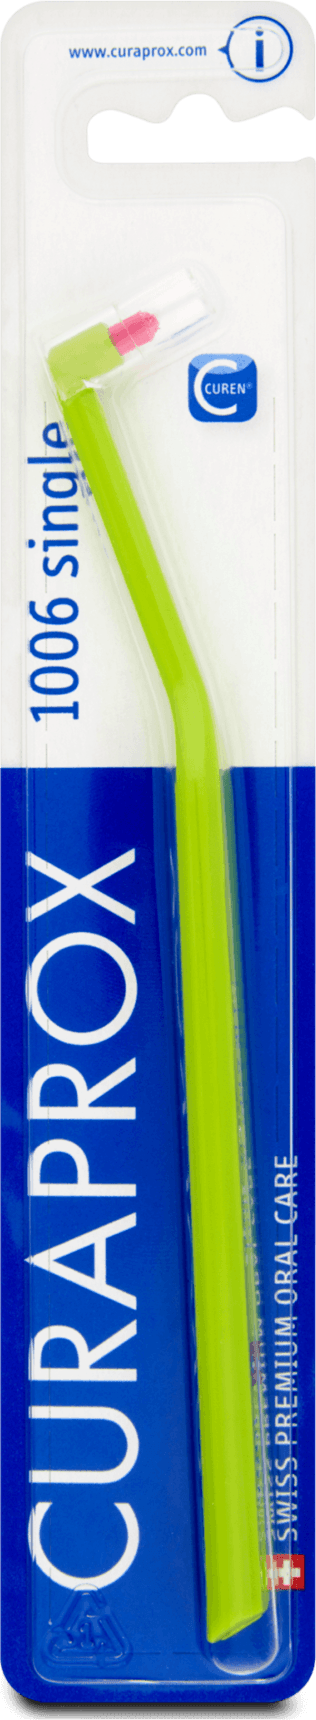 Курапрокс Curaprox зубная щетка монопучковая 1006